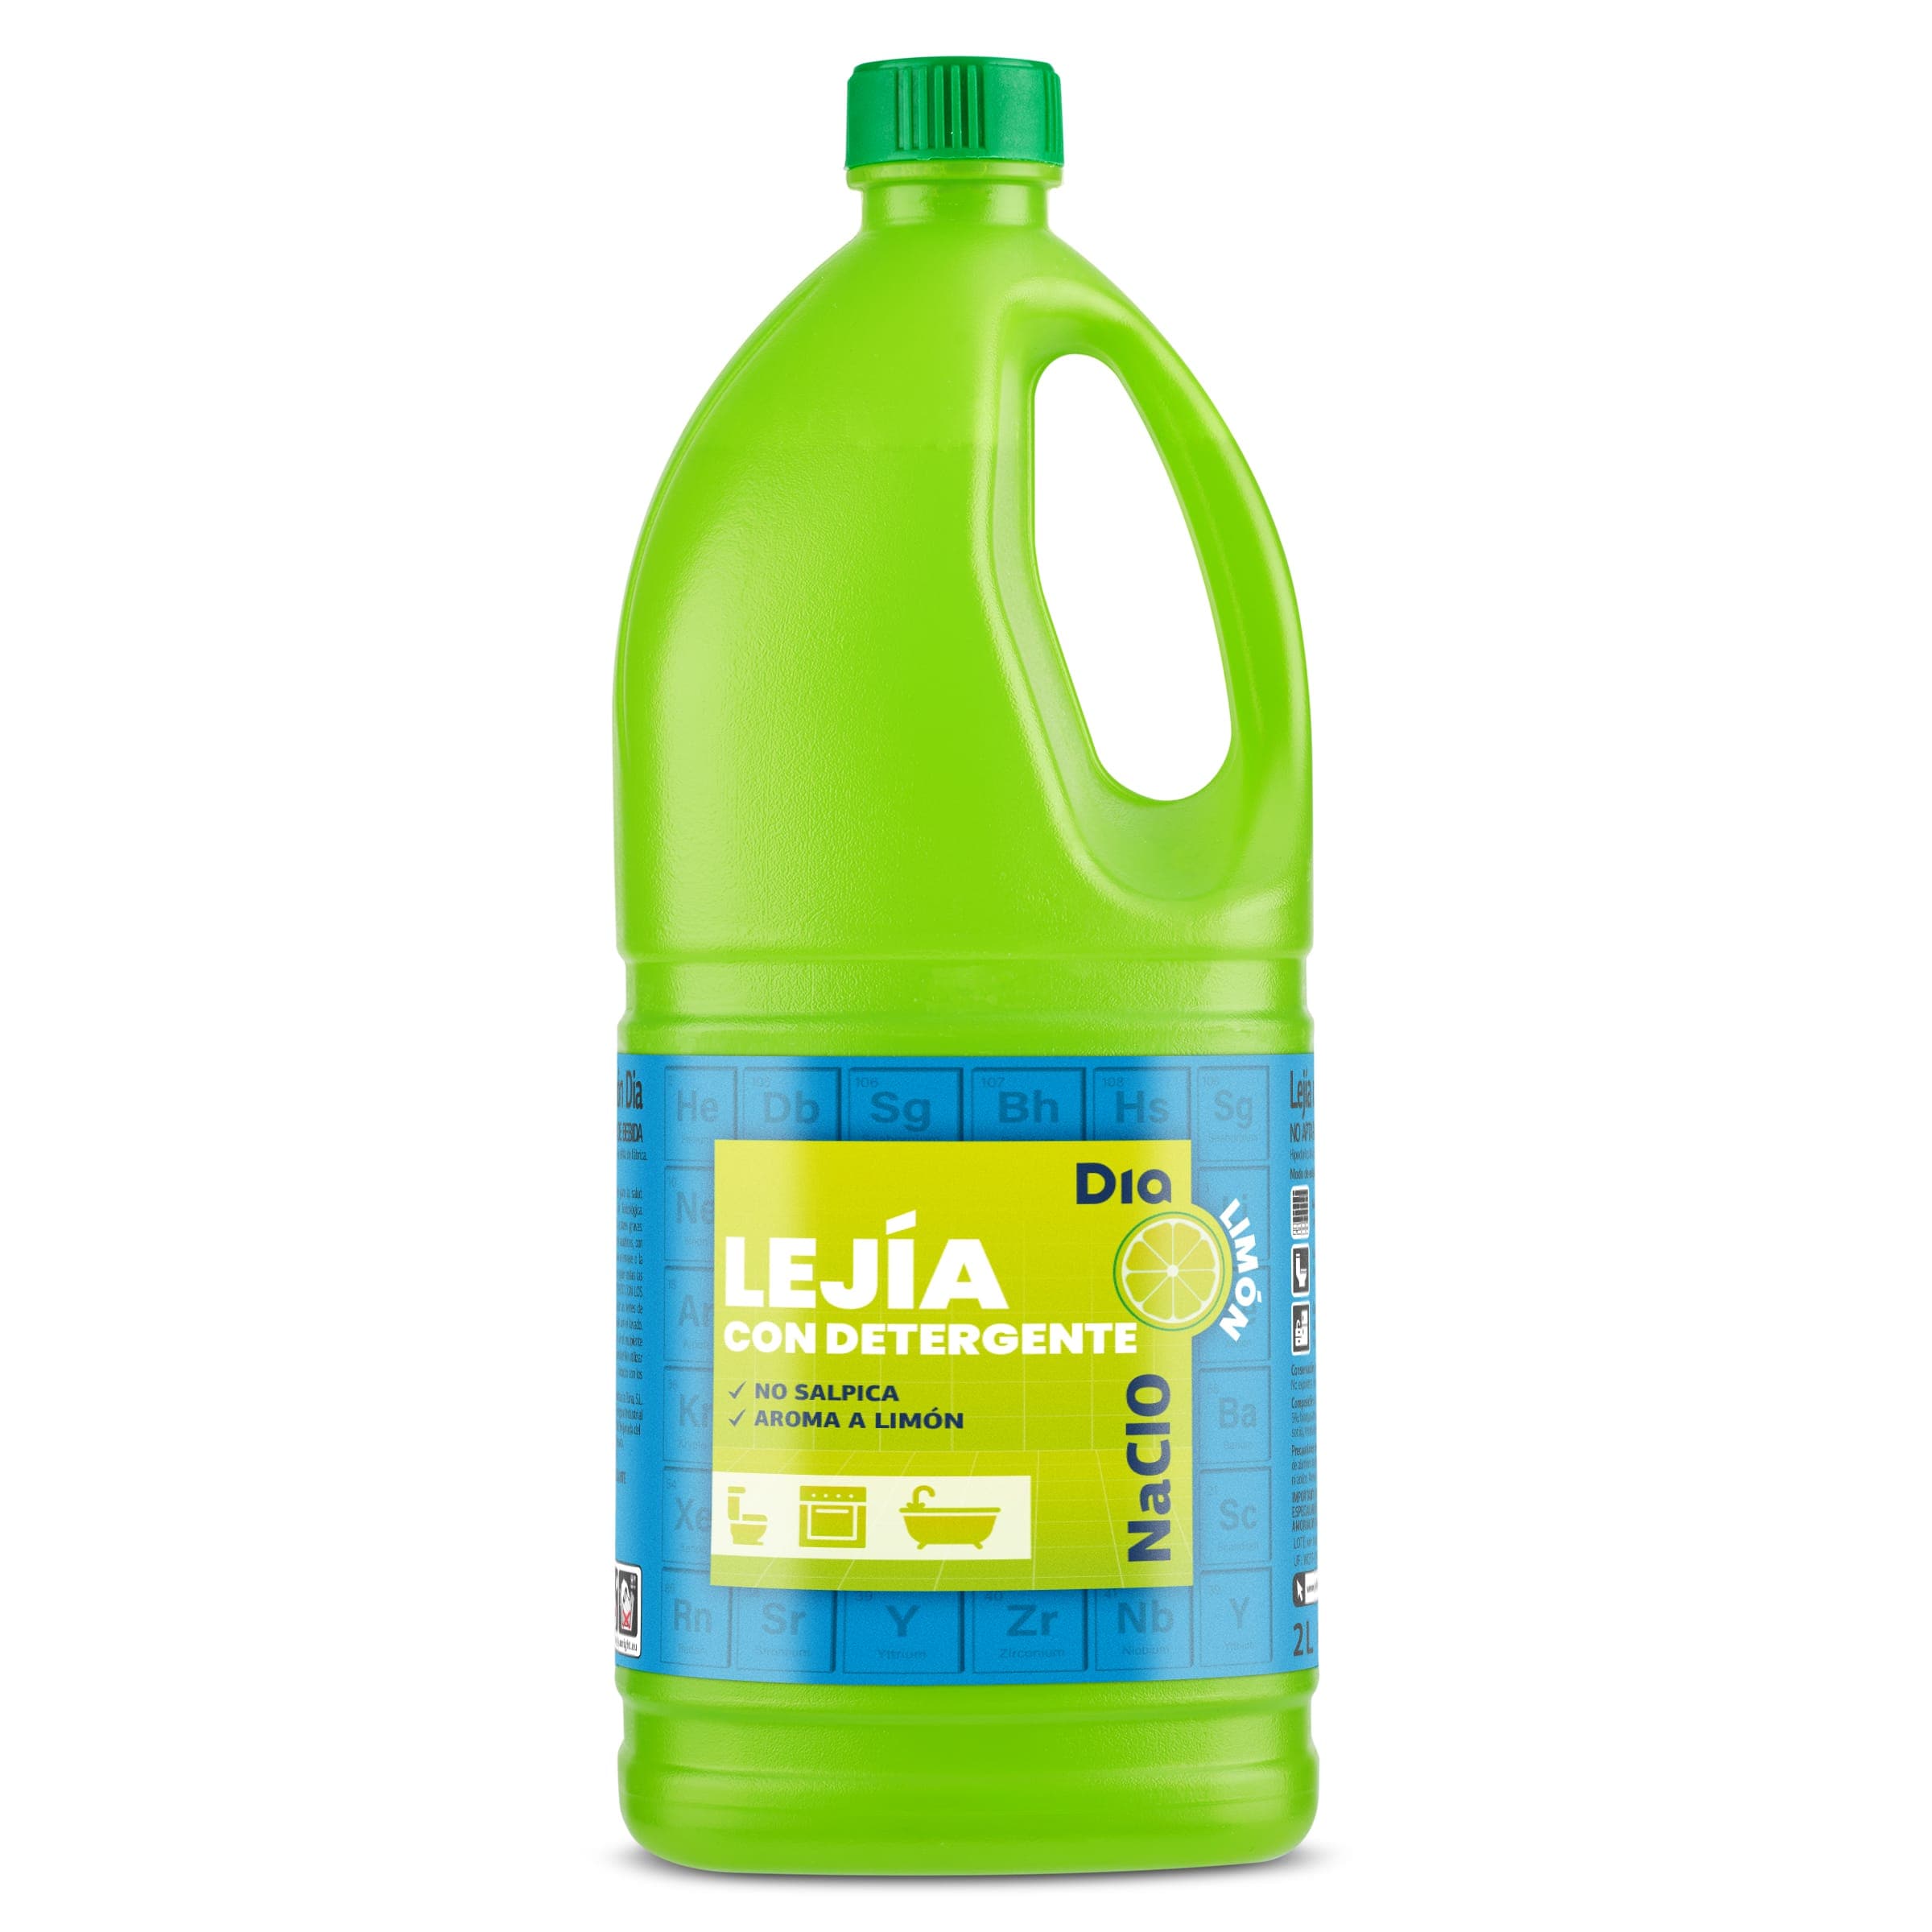 Asturquimia - Lejía con Detergente Limón Unex